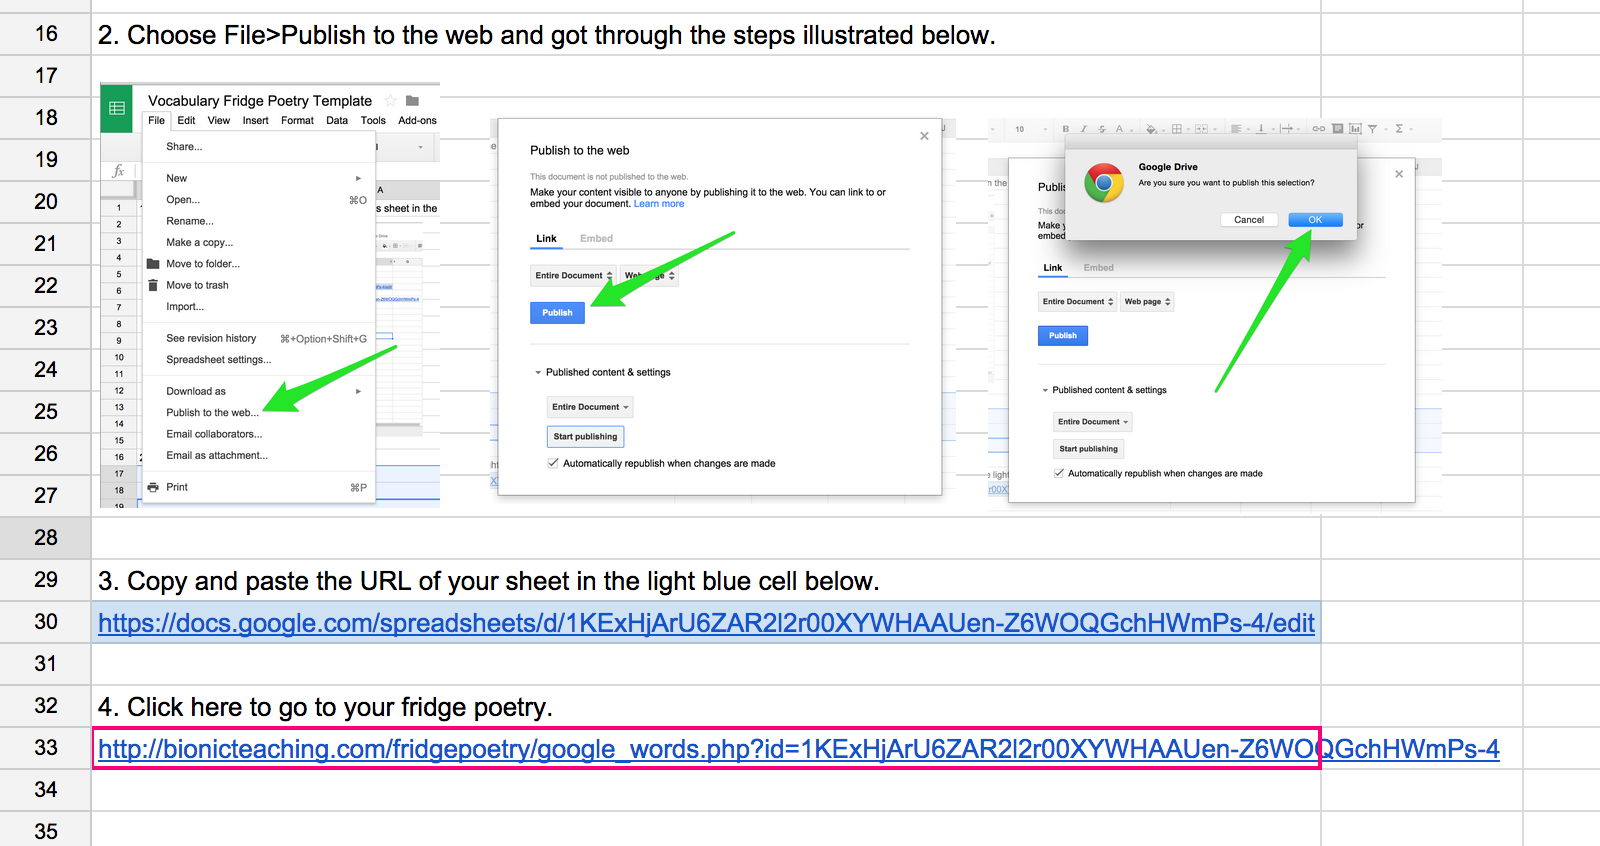 Google Spreadsheet As Database For Website for Fridge Poetry – Google Sheets As Database – Bionic Teaching